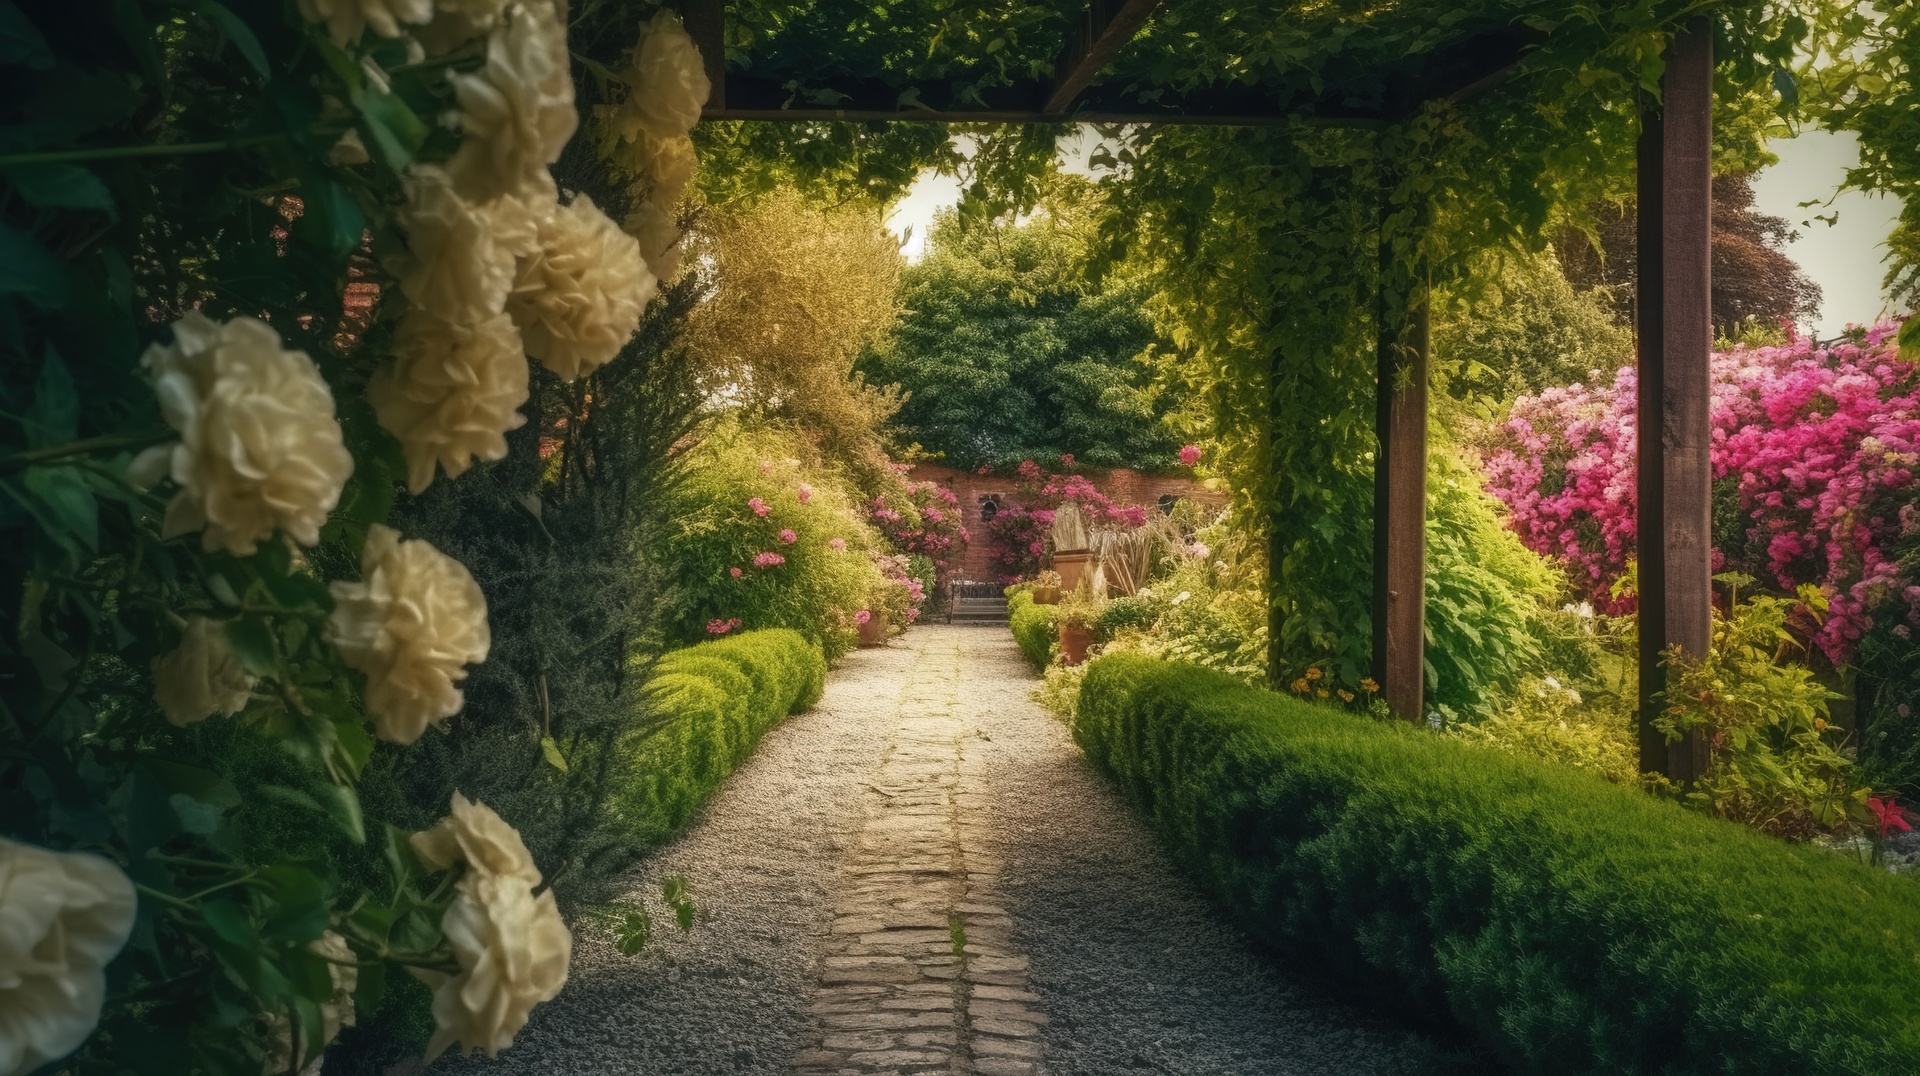 Przedstawione na zdjęciu bujne ogrody w włoskim stylu roztaczają niezwykłą atmosferę uroku i elegancji. Kaskady kwiatów, kolumny z pnączami i starannie przystrzyżone żywopłoty tworzą malowniczą scenografię. Włoski ogród, pełen kolorów i aromatów, zaprasza do zanurzenia się w romantycznym świecie przyrody i delektowania się jego niepowtarzalnym wdziękiem